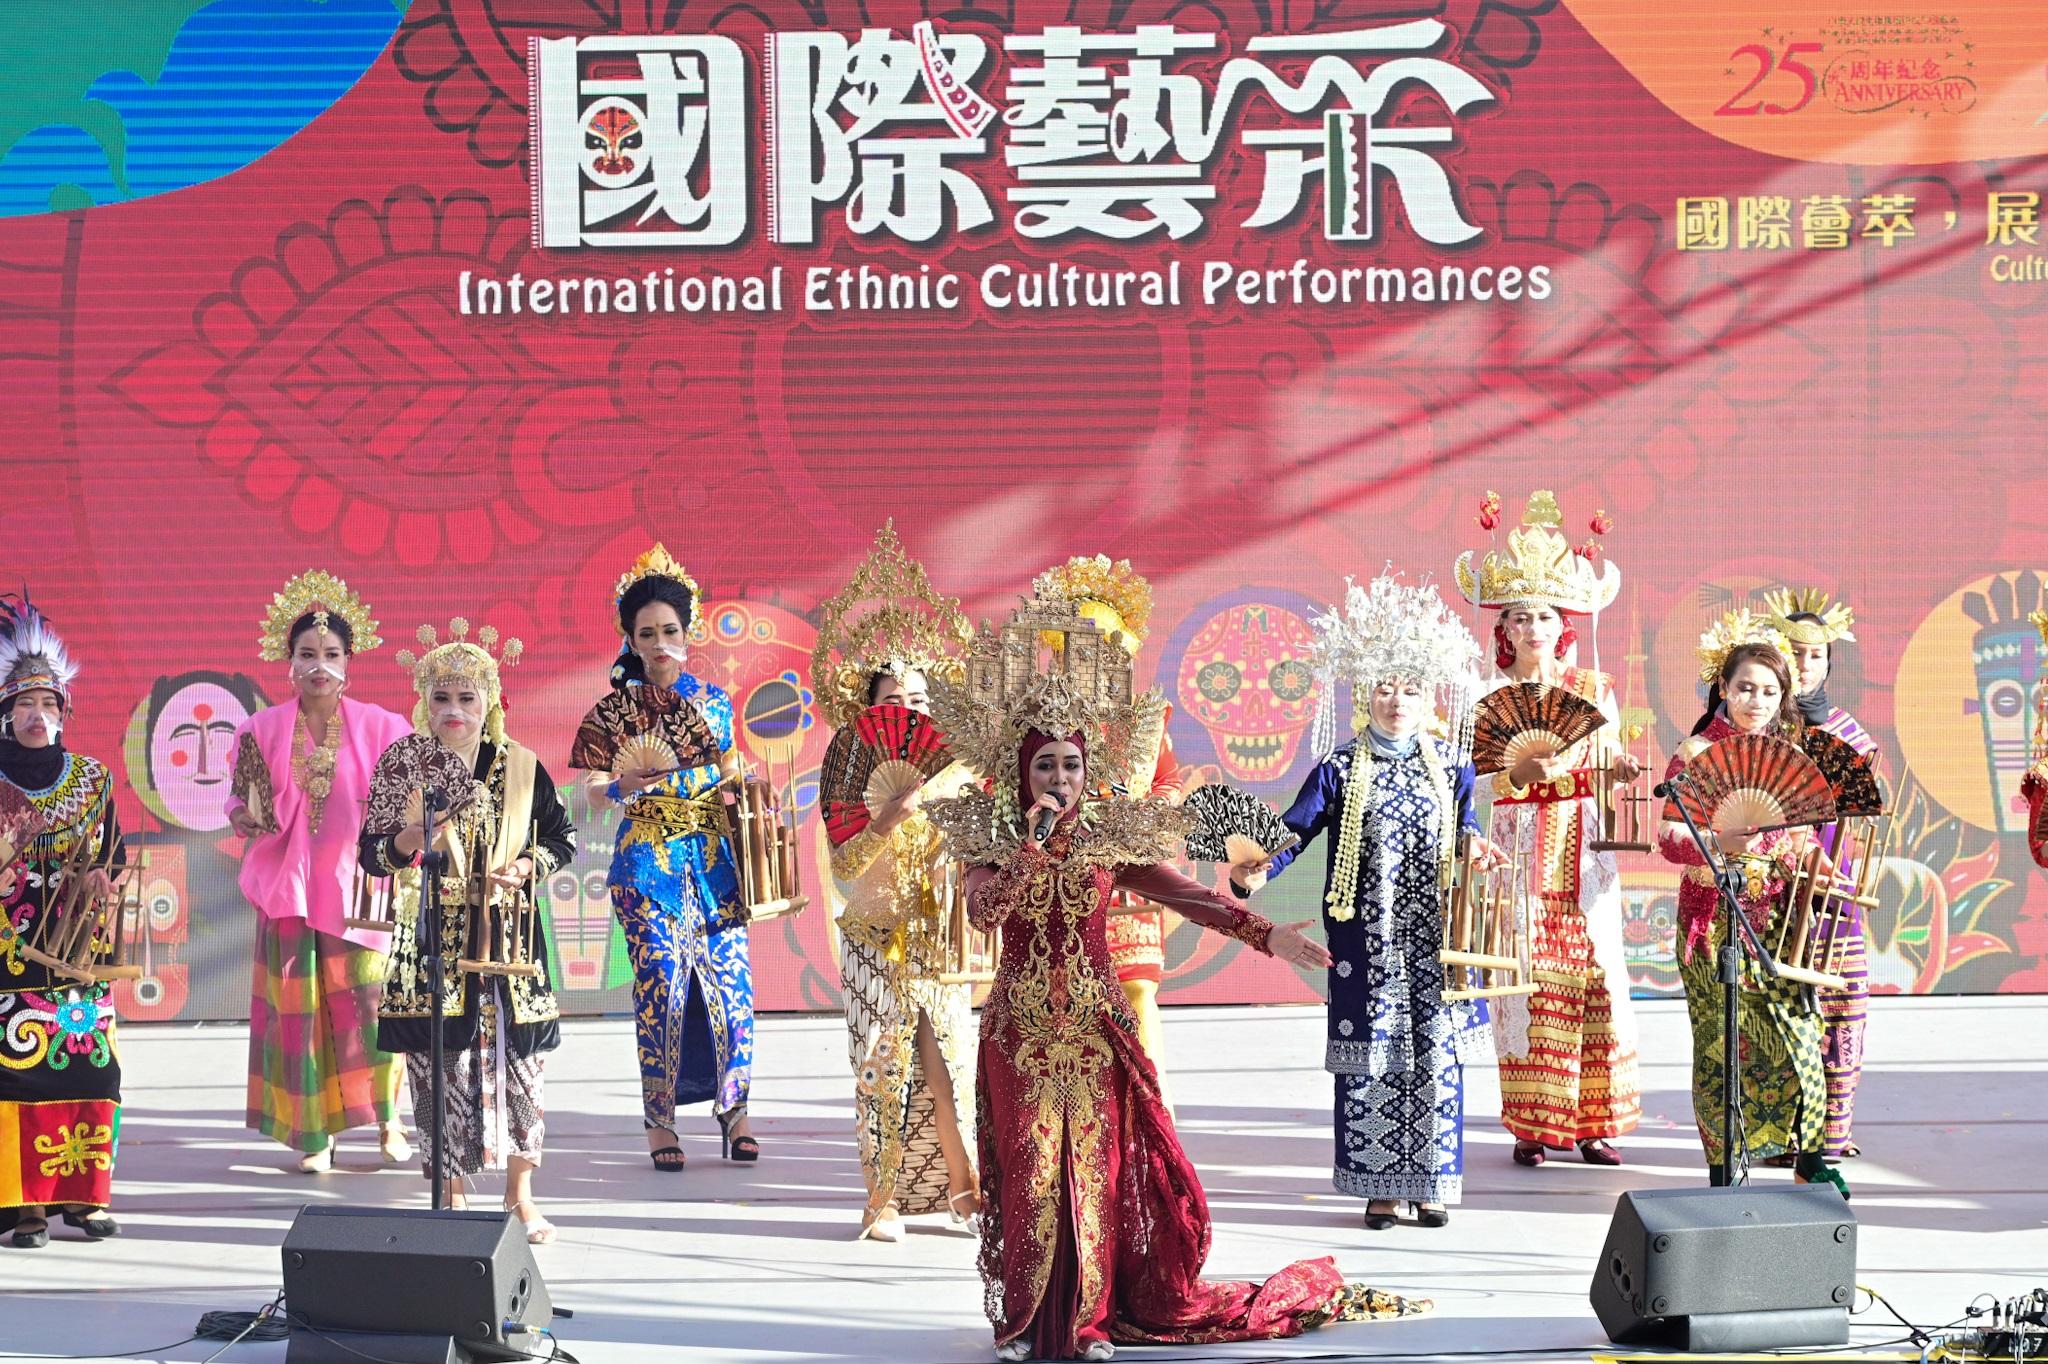 康樂及文化事務署今日（十一月十三日）下午在香港文化中心露天廣場舉行「國際藝采」，透過豐富活動包括傳統民族舞台表演、民族面具展示和周邊活動攤位，展現不同地域的獨特文化和演藝才華。圖示印尼民族舞蹈表演。